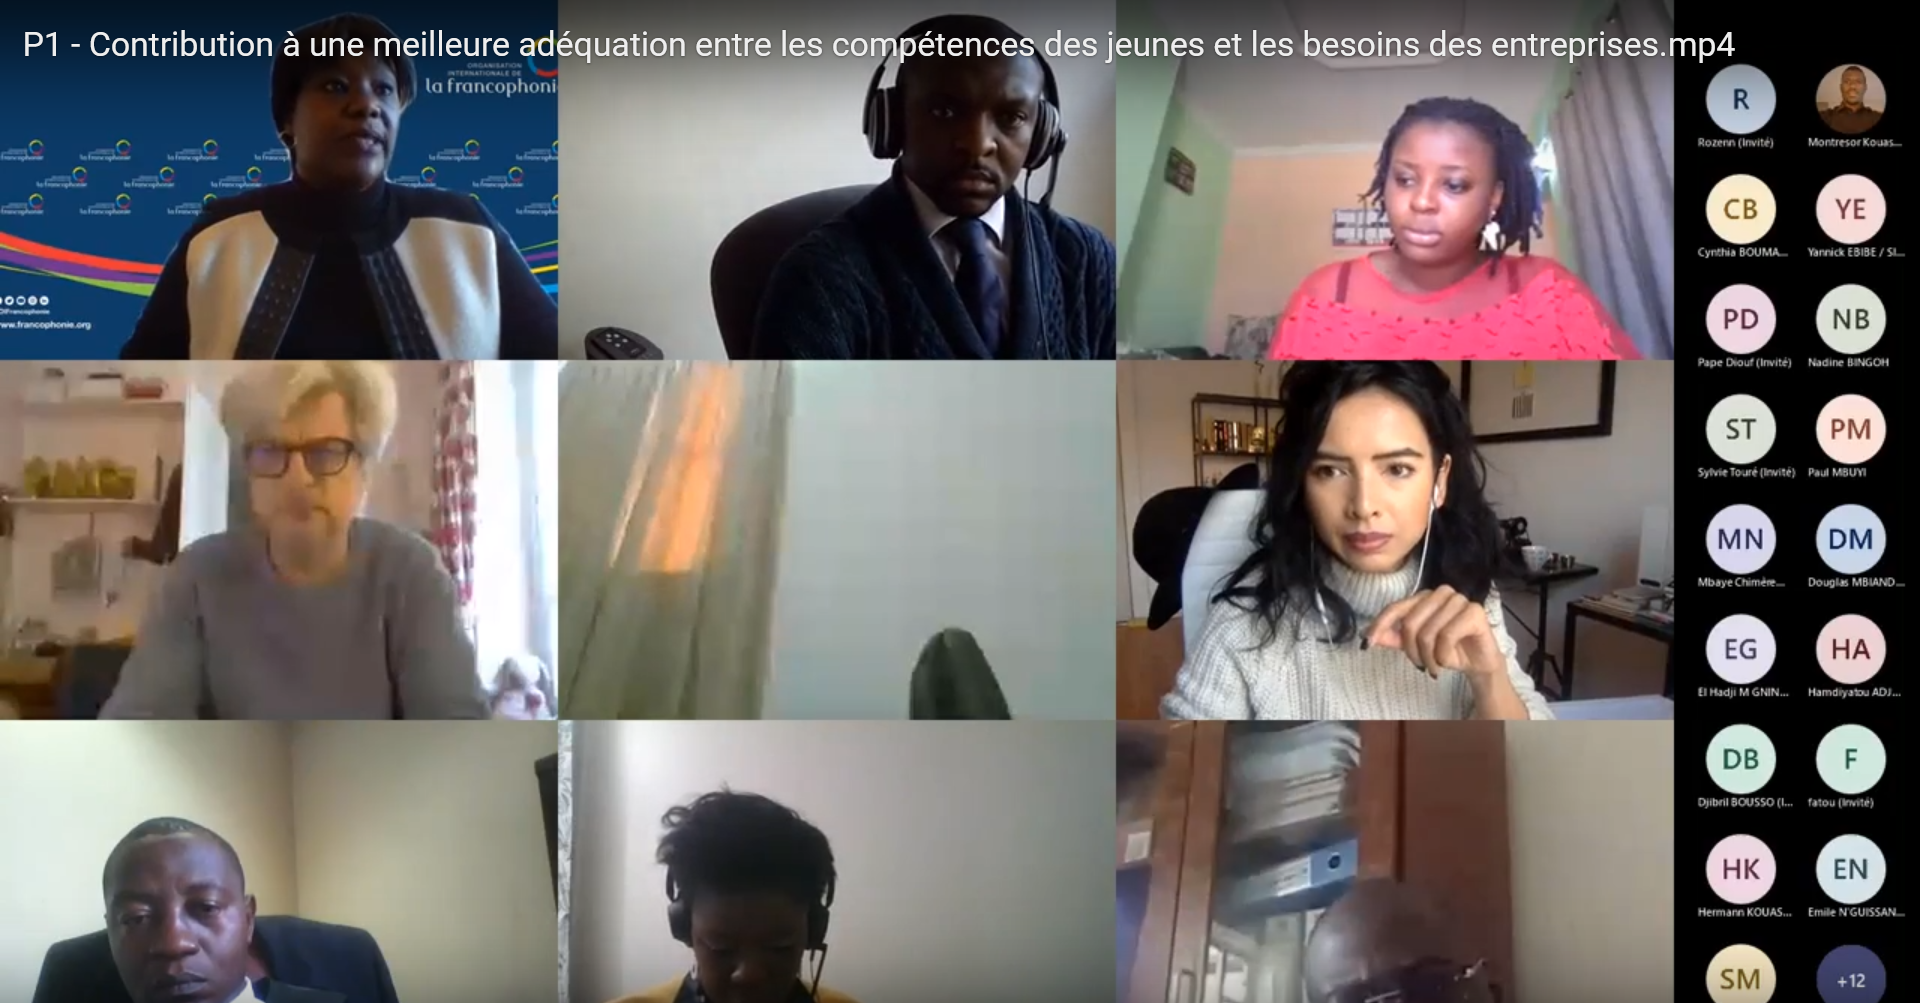 L’OIF œuvre pour l’insertion professionnelle des jeunes en Afrique francophone